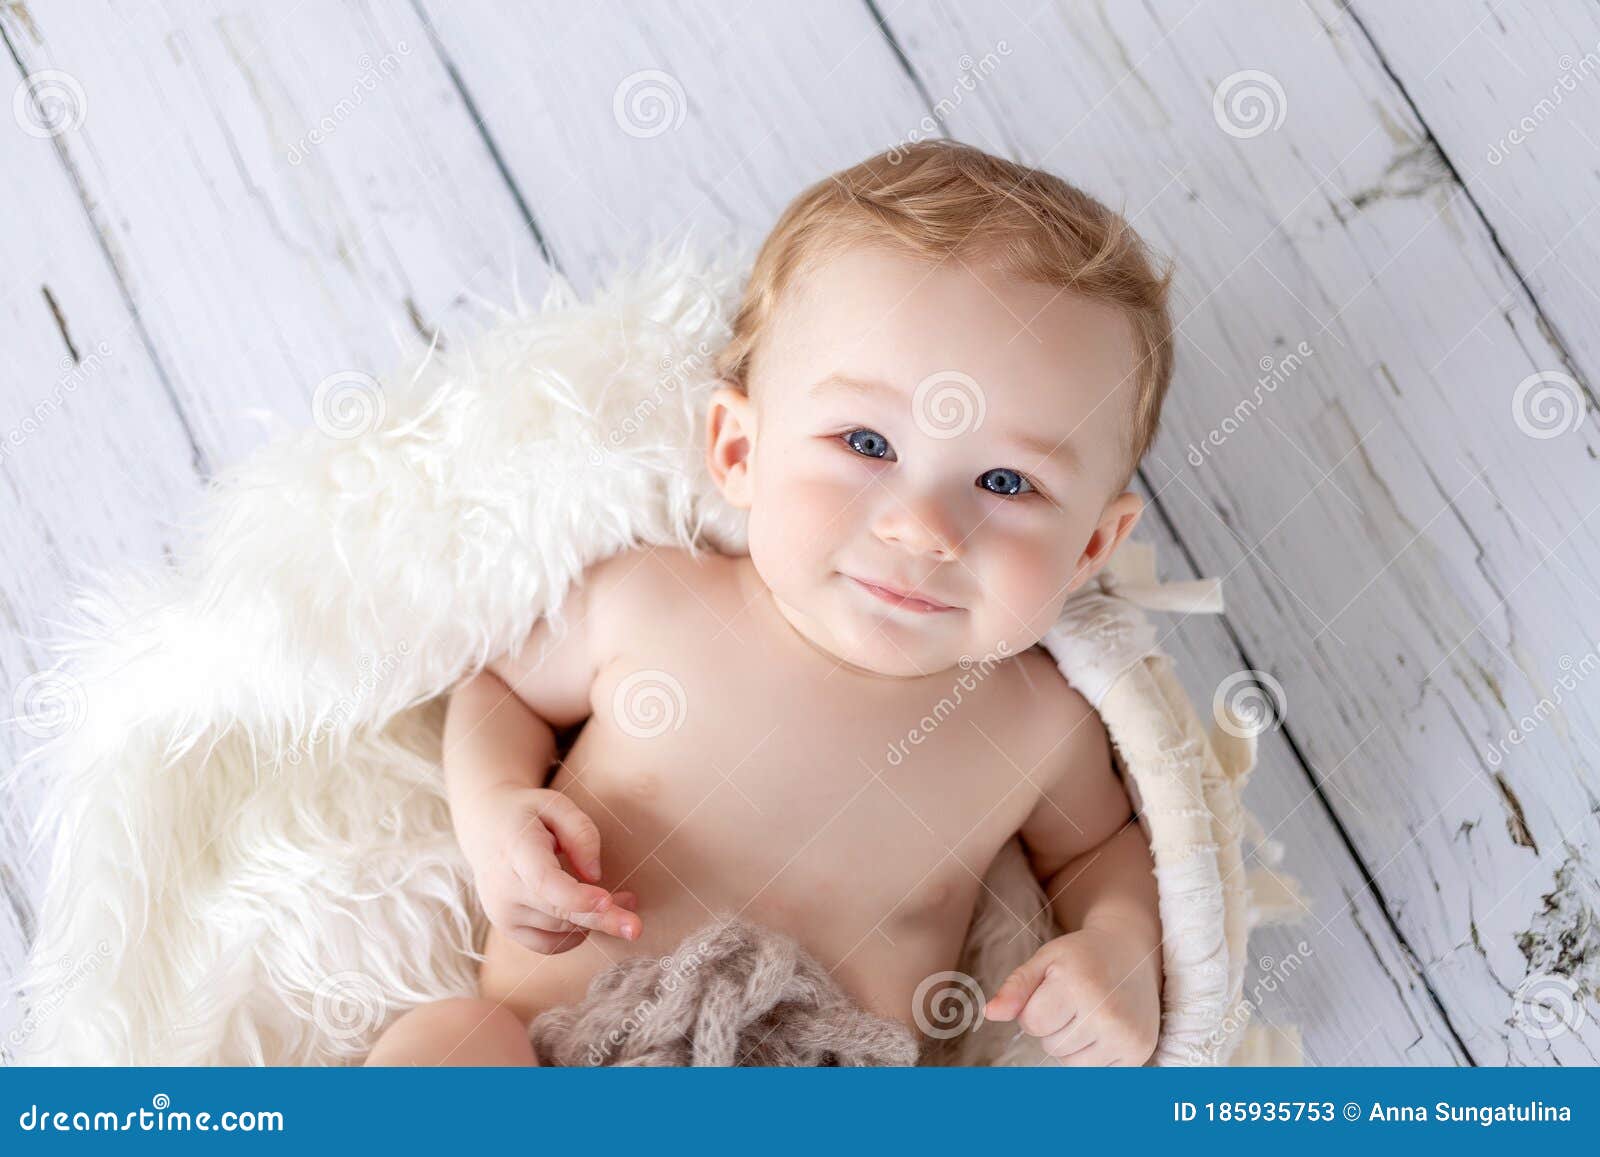 Lindo Bebé De 8 Meses De Edad Miente Y Mira a La Cámara Bebé Como Un ángel  Con Pelo Rizado Blanco Imagen de archivo - Imagen de bebé, rizado: 185935753